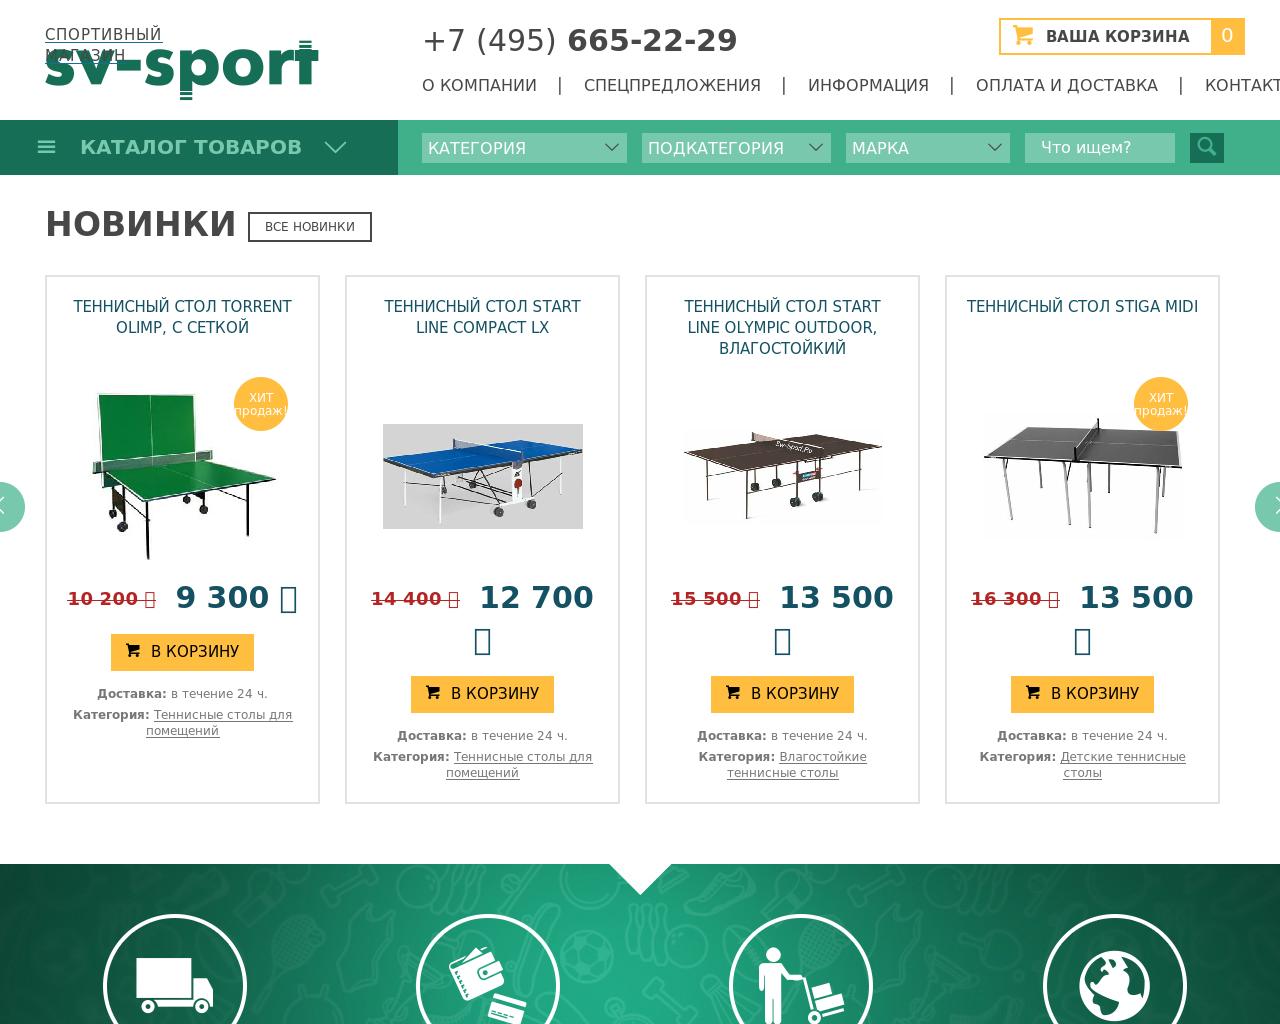 Изображение сайта sv-sport.ru в разрешении 1280x1024